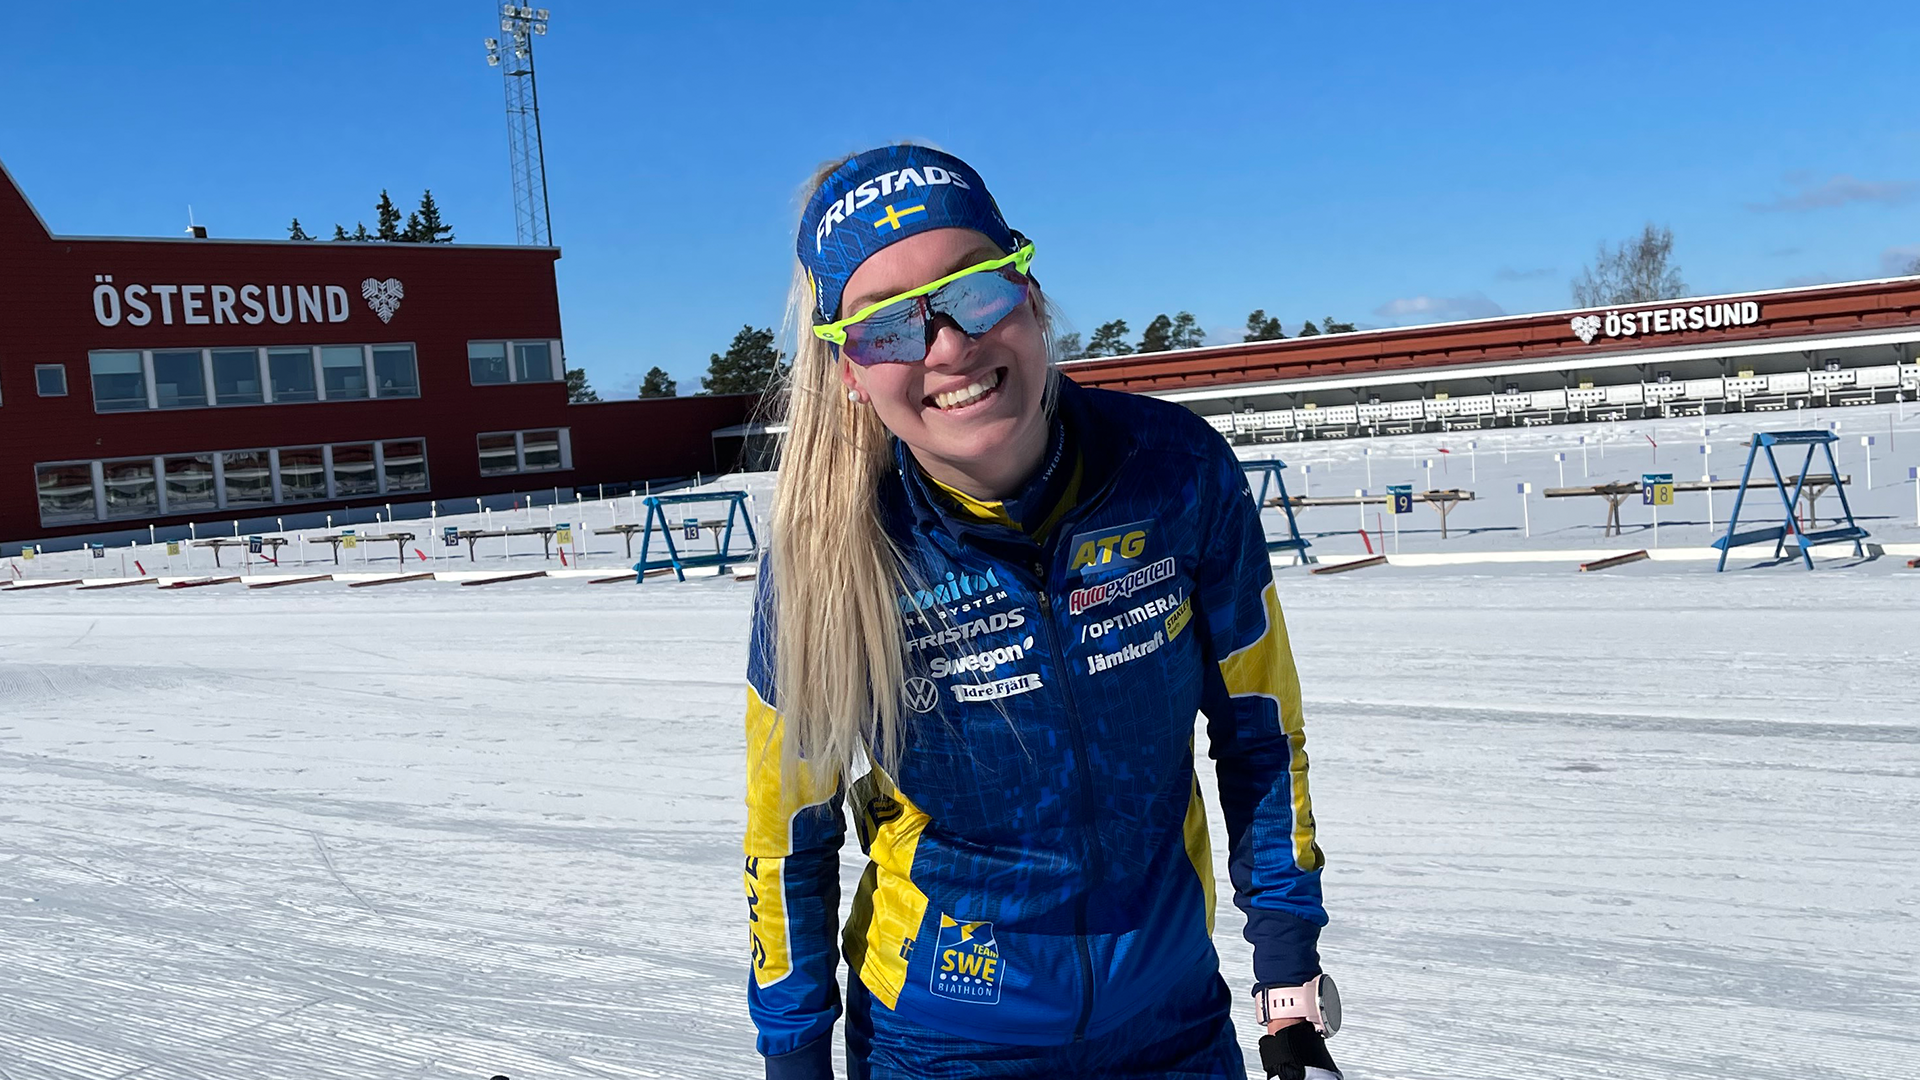 Lucy z Ruže pre nevestu o živote vo Švédsku a šou: Švédi milujú šport a prírodu, ale nie ľudí. Pokojne by som išla aj do inej reality šou